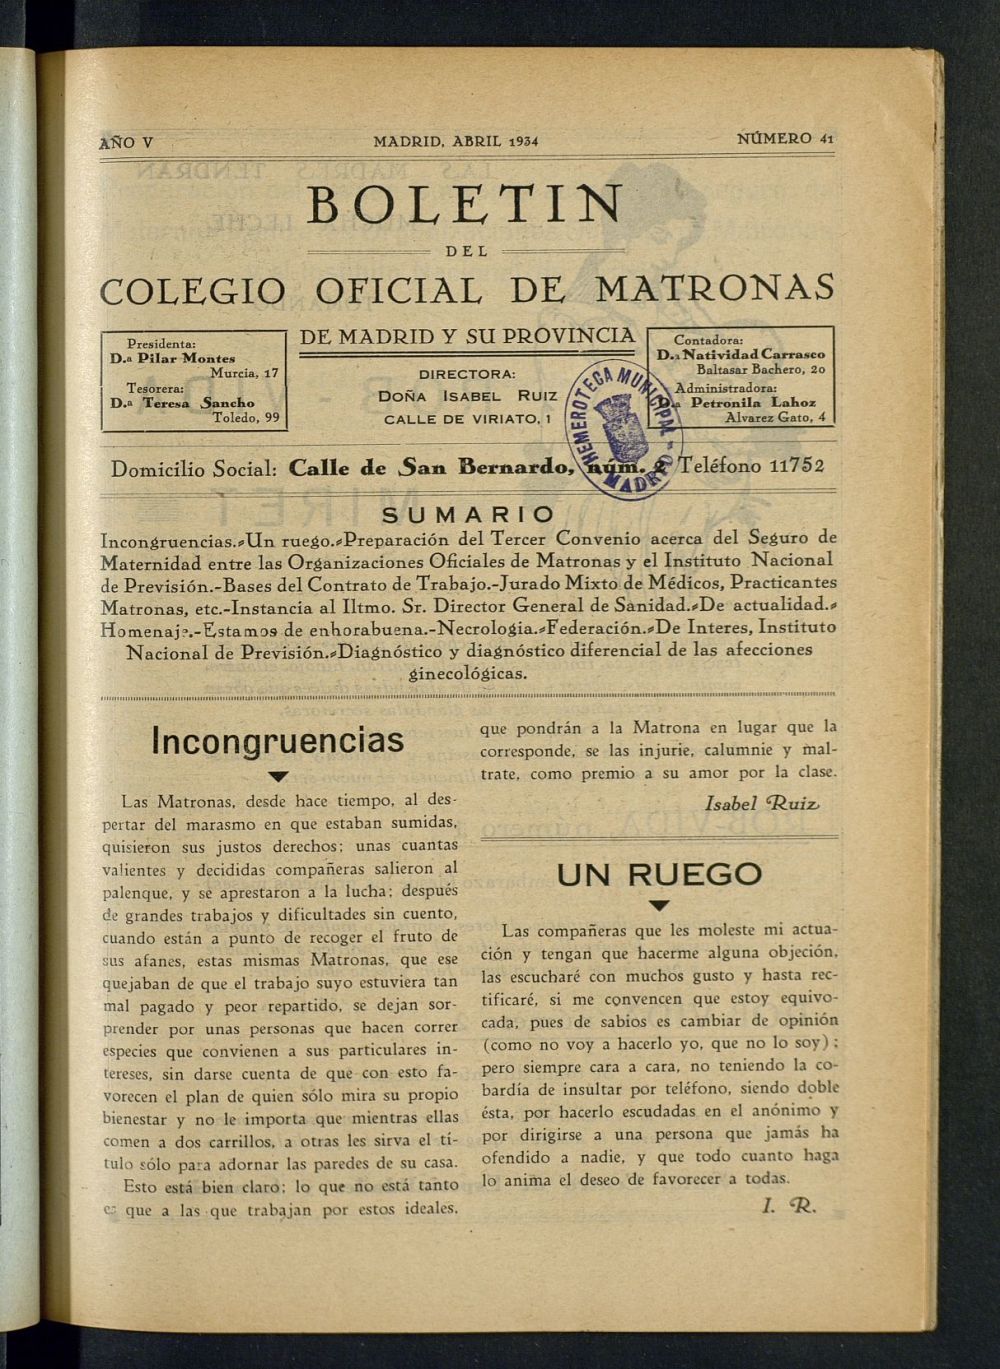 Boletn del Colegio Oficial de Matronas de Madrid y su Provincia de abril de 1934